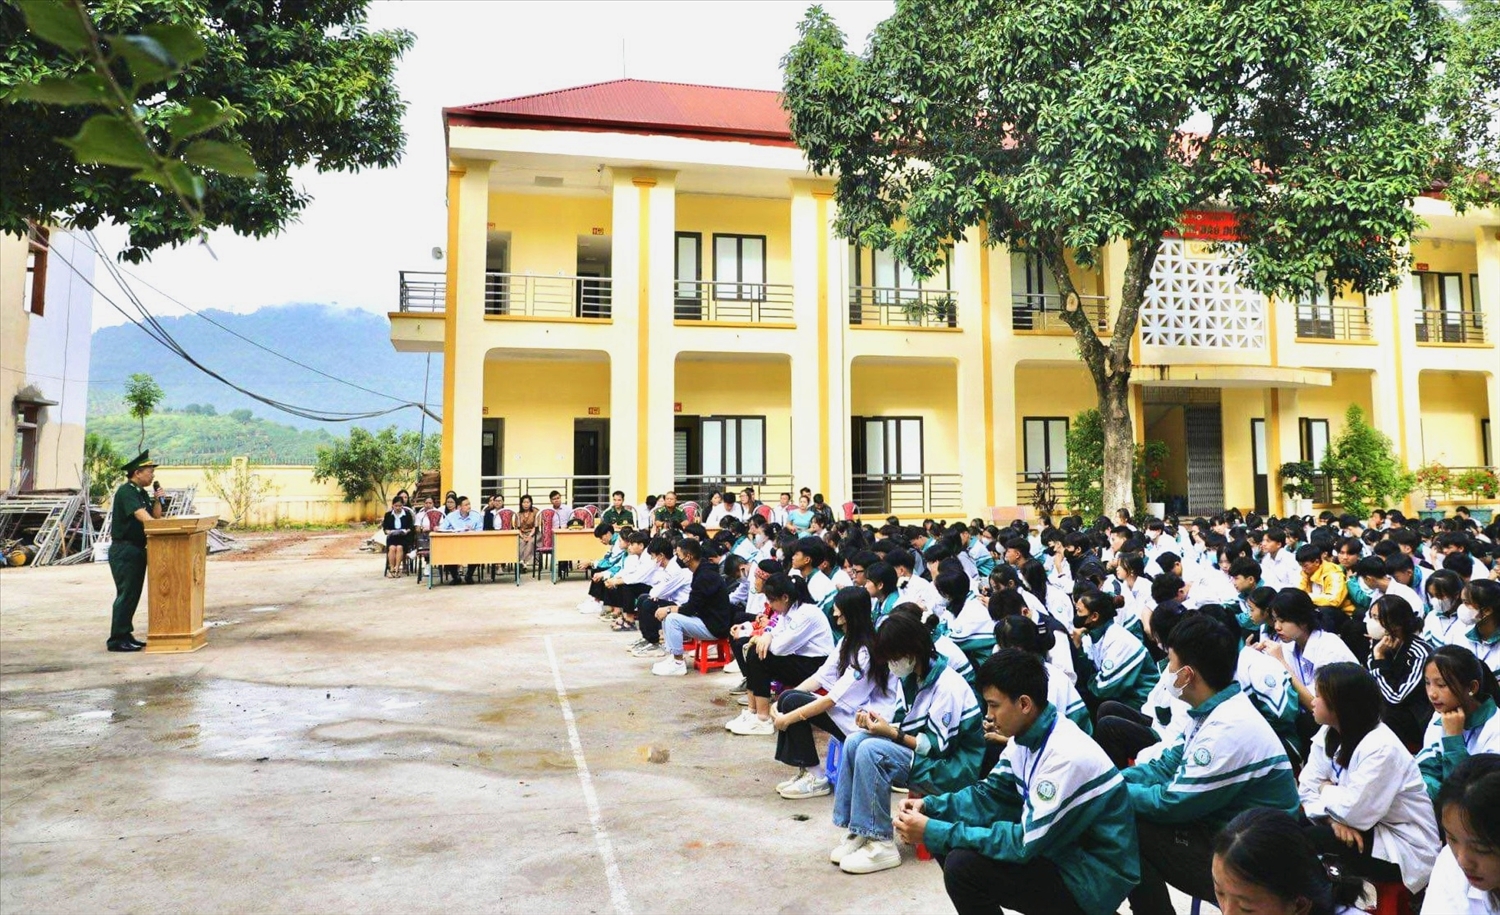 Thiếu tá Mai Thế Cảnh, Chính trị viên Đồn Biên phòng Chiềng Sơn thông tin những kiến thức pháp luật cơ bản cho các em học sinh.